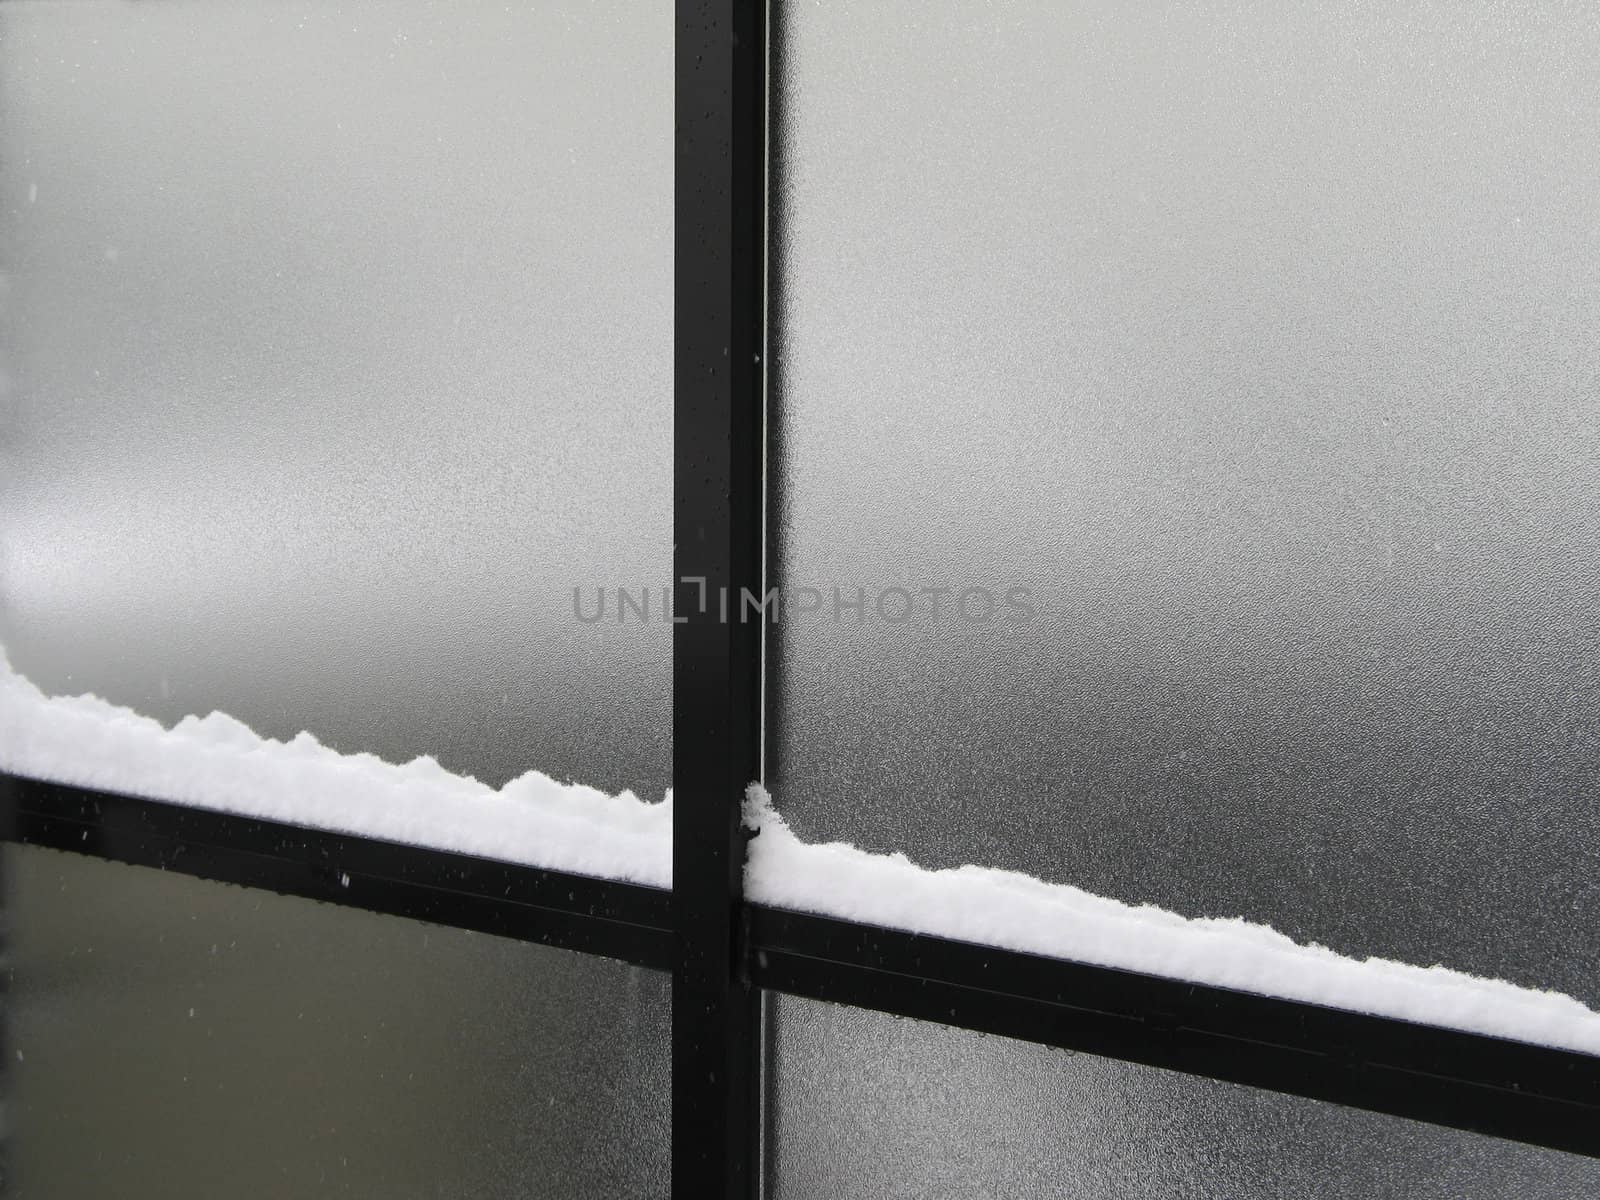 snow on a window frame